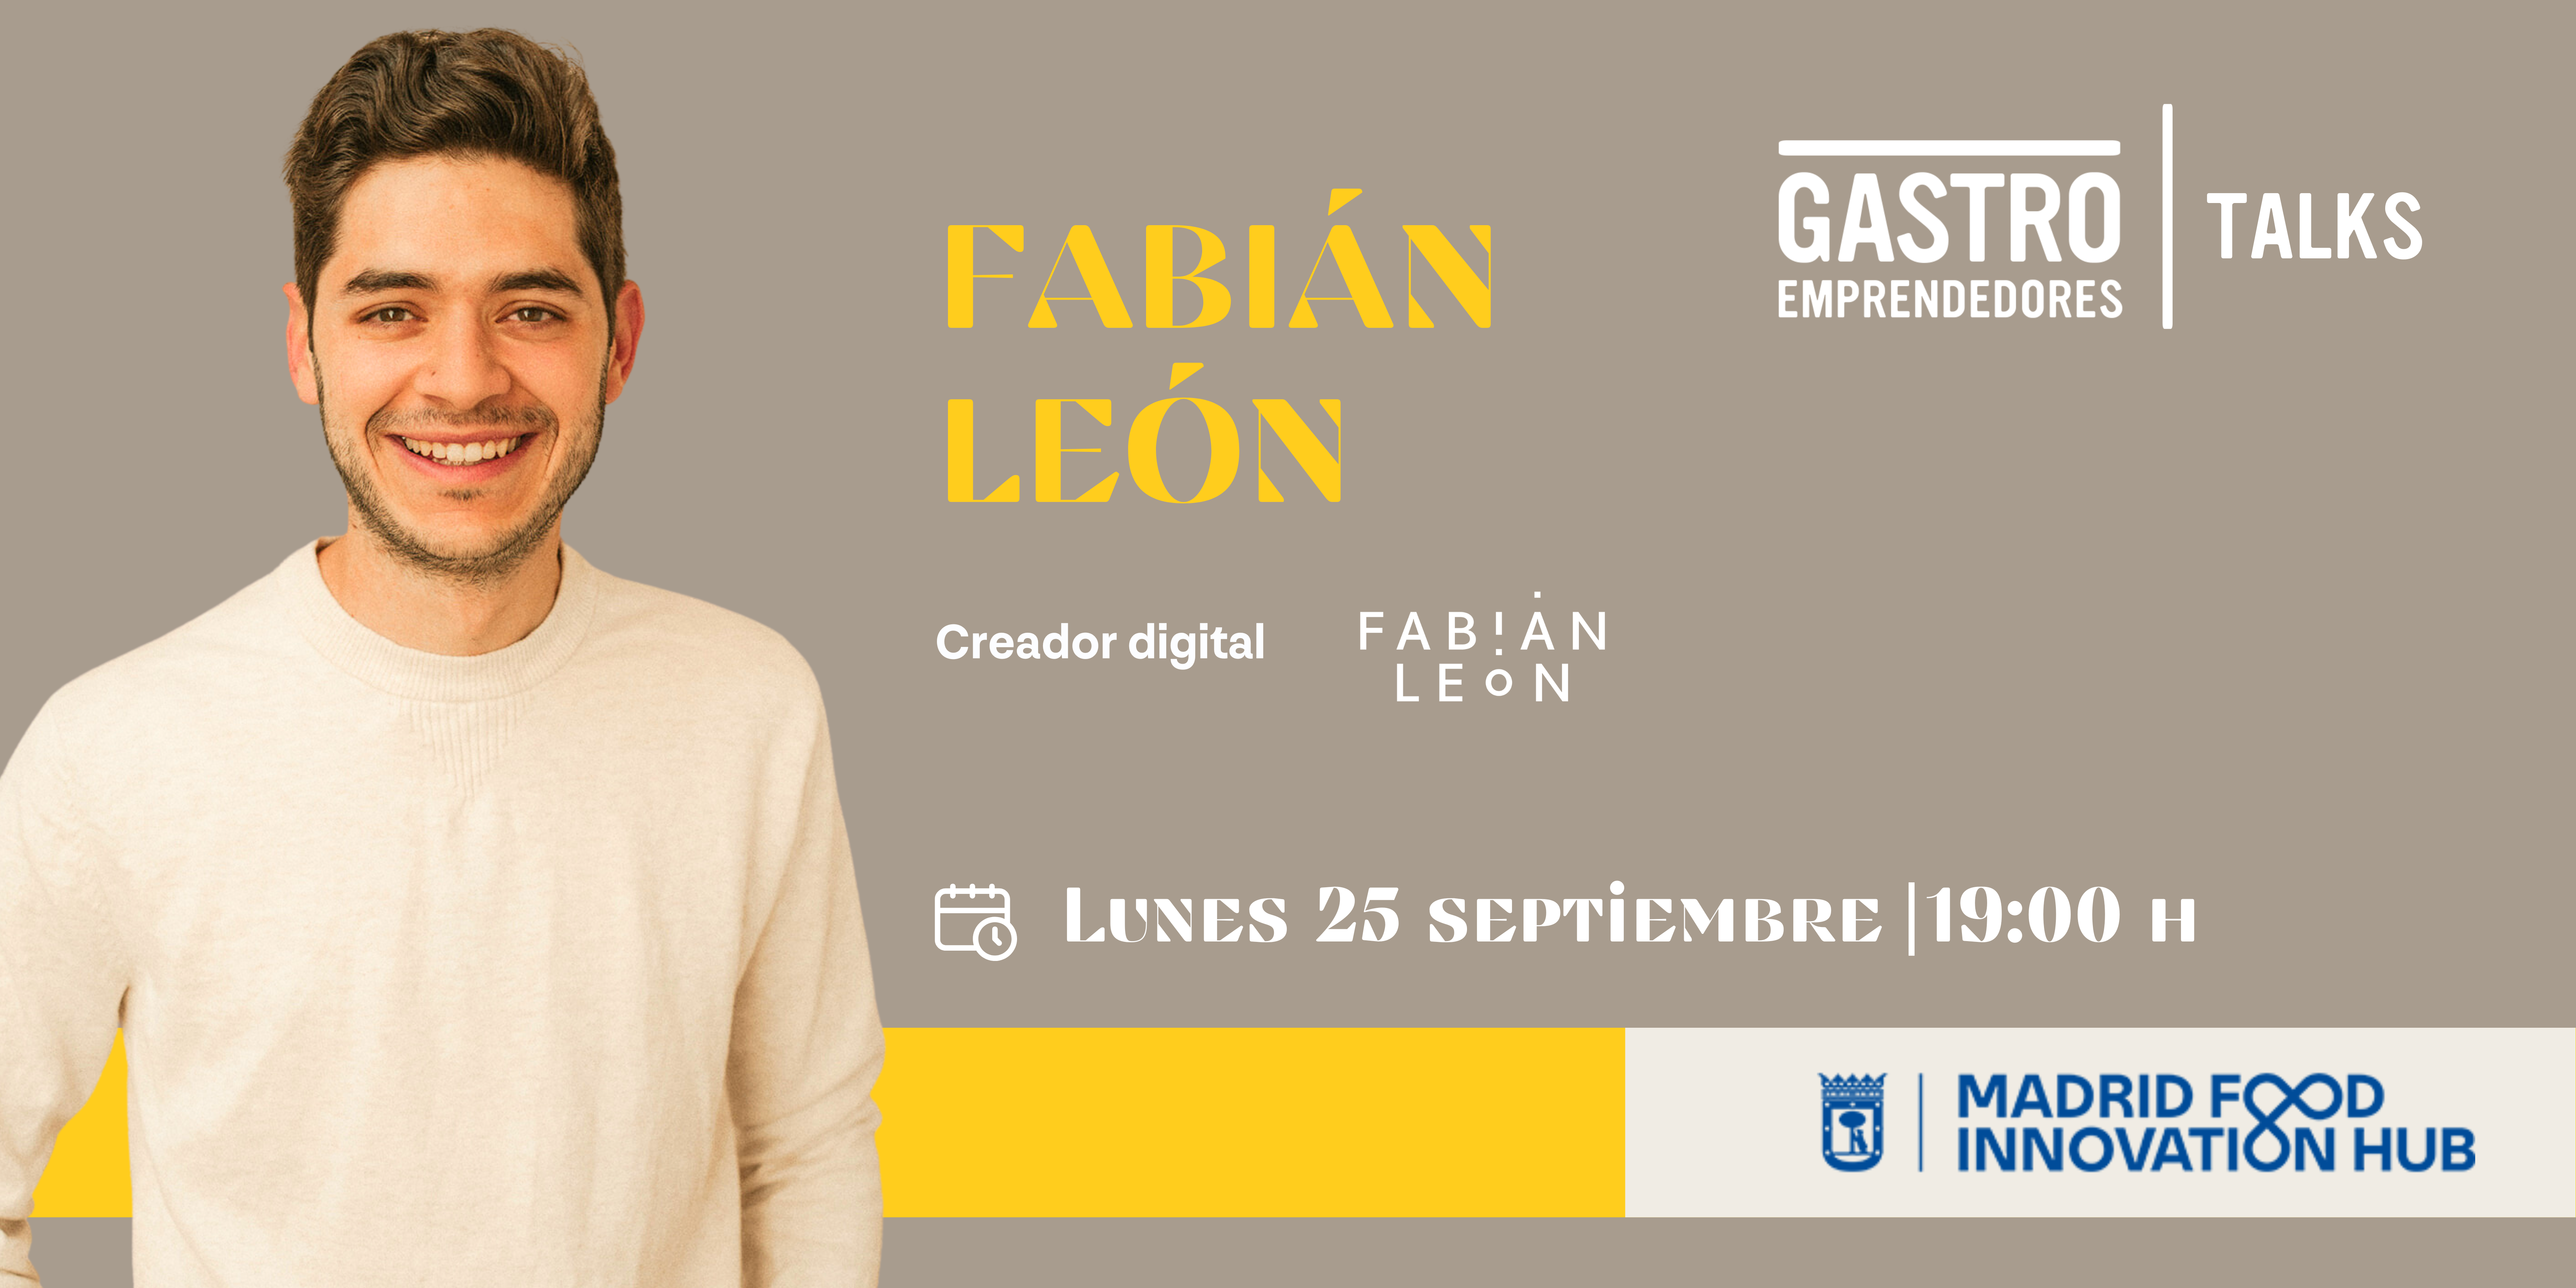 Gastroemprendedores talks: Fabián León